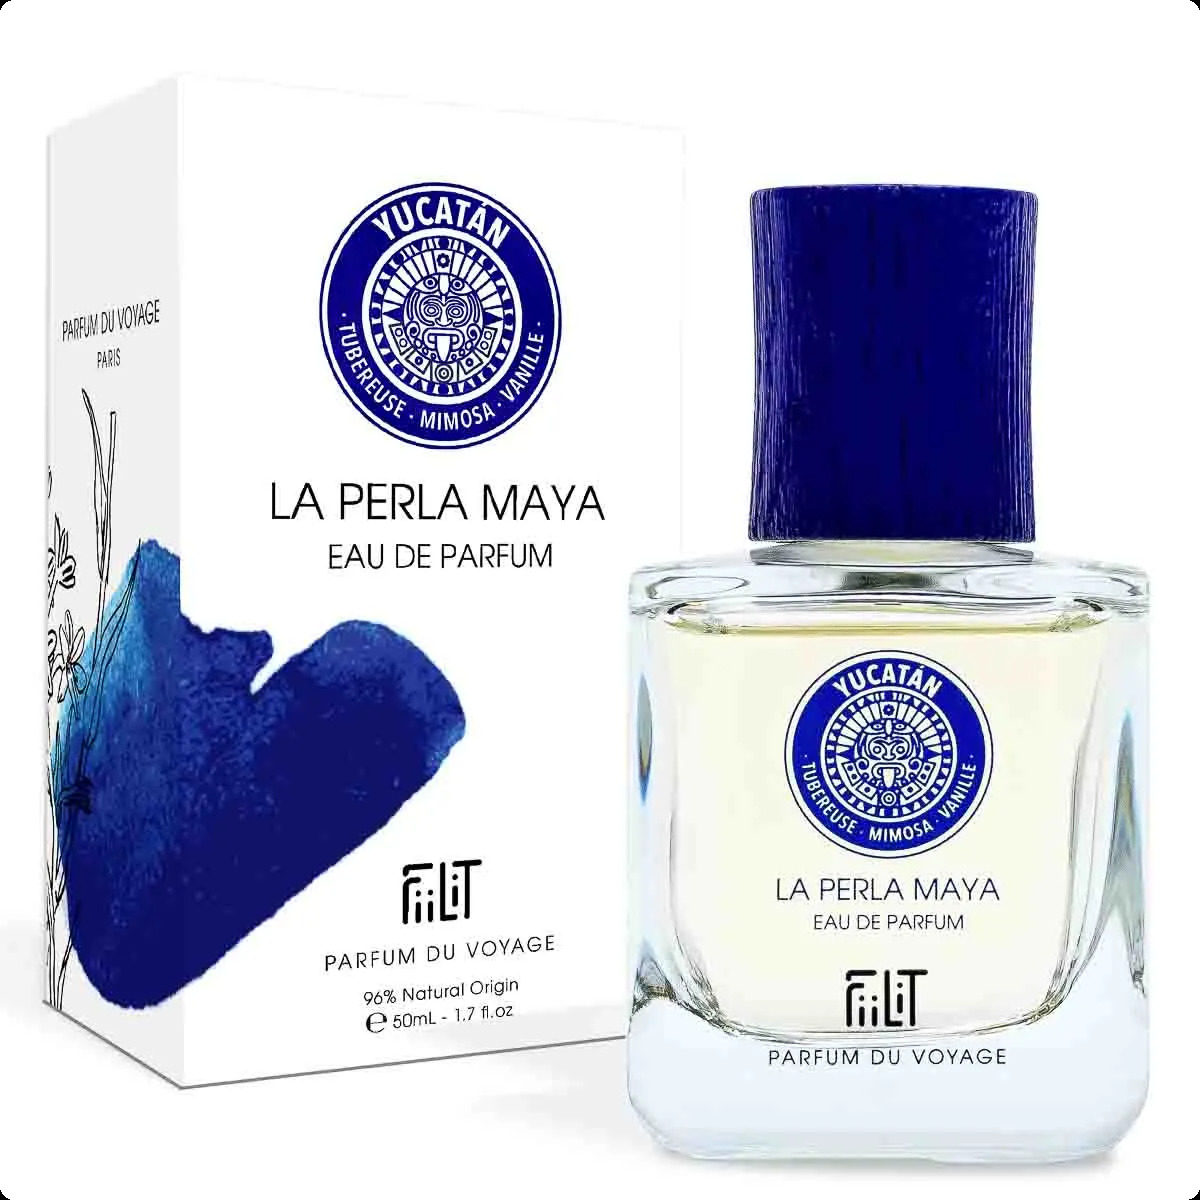 Филит парфюм ду вояж Ла перла майя юкатан для женщин и мужчин